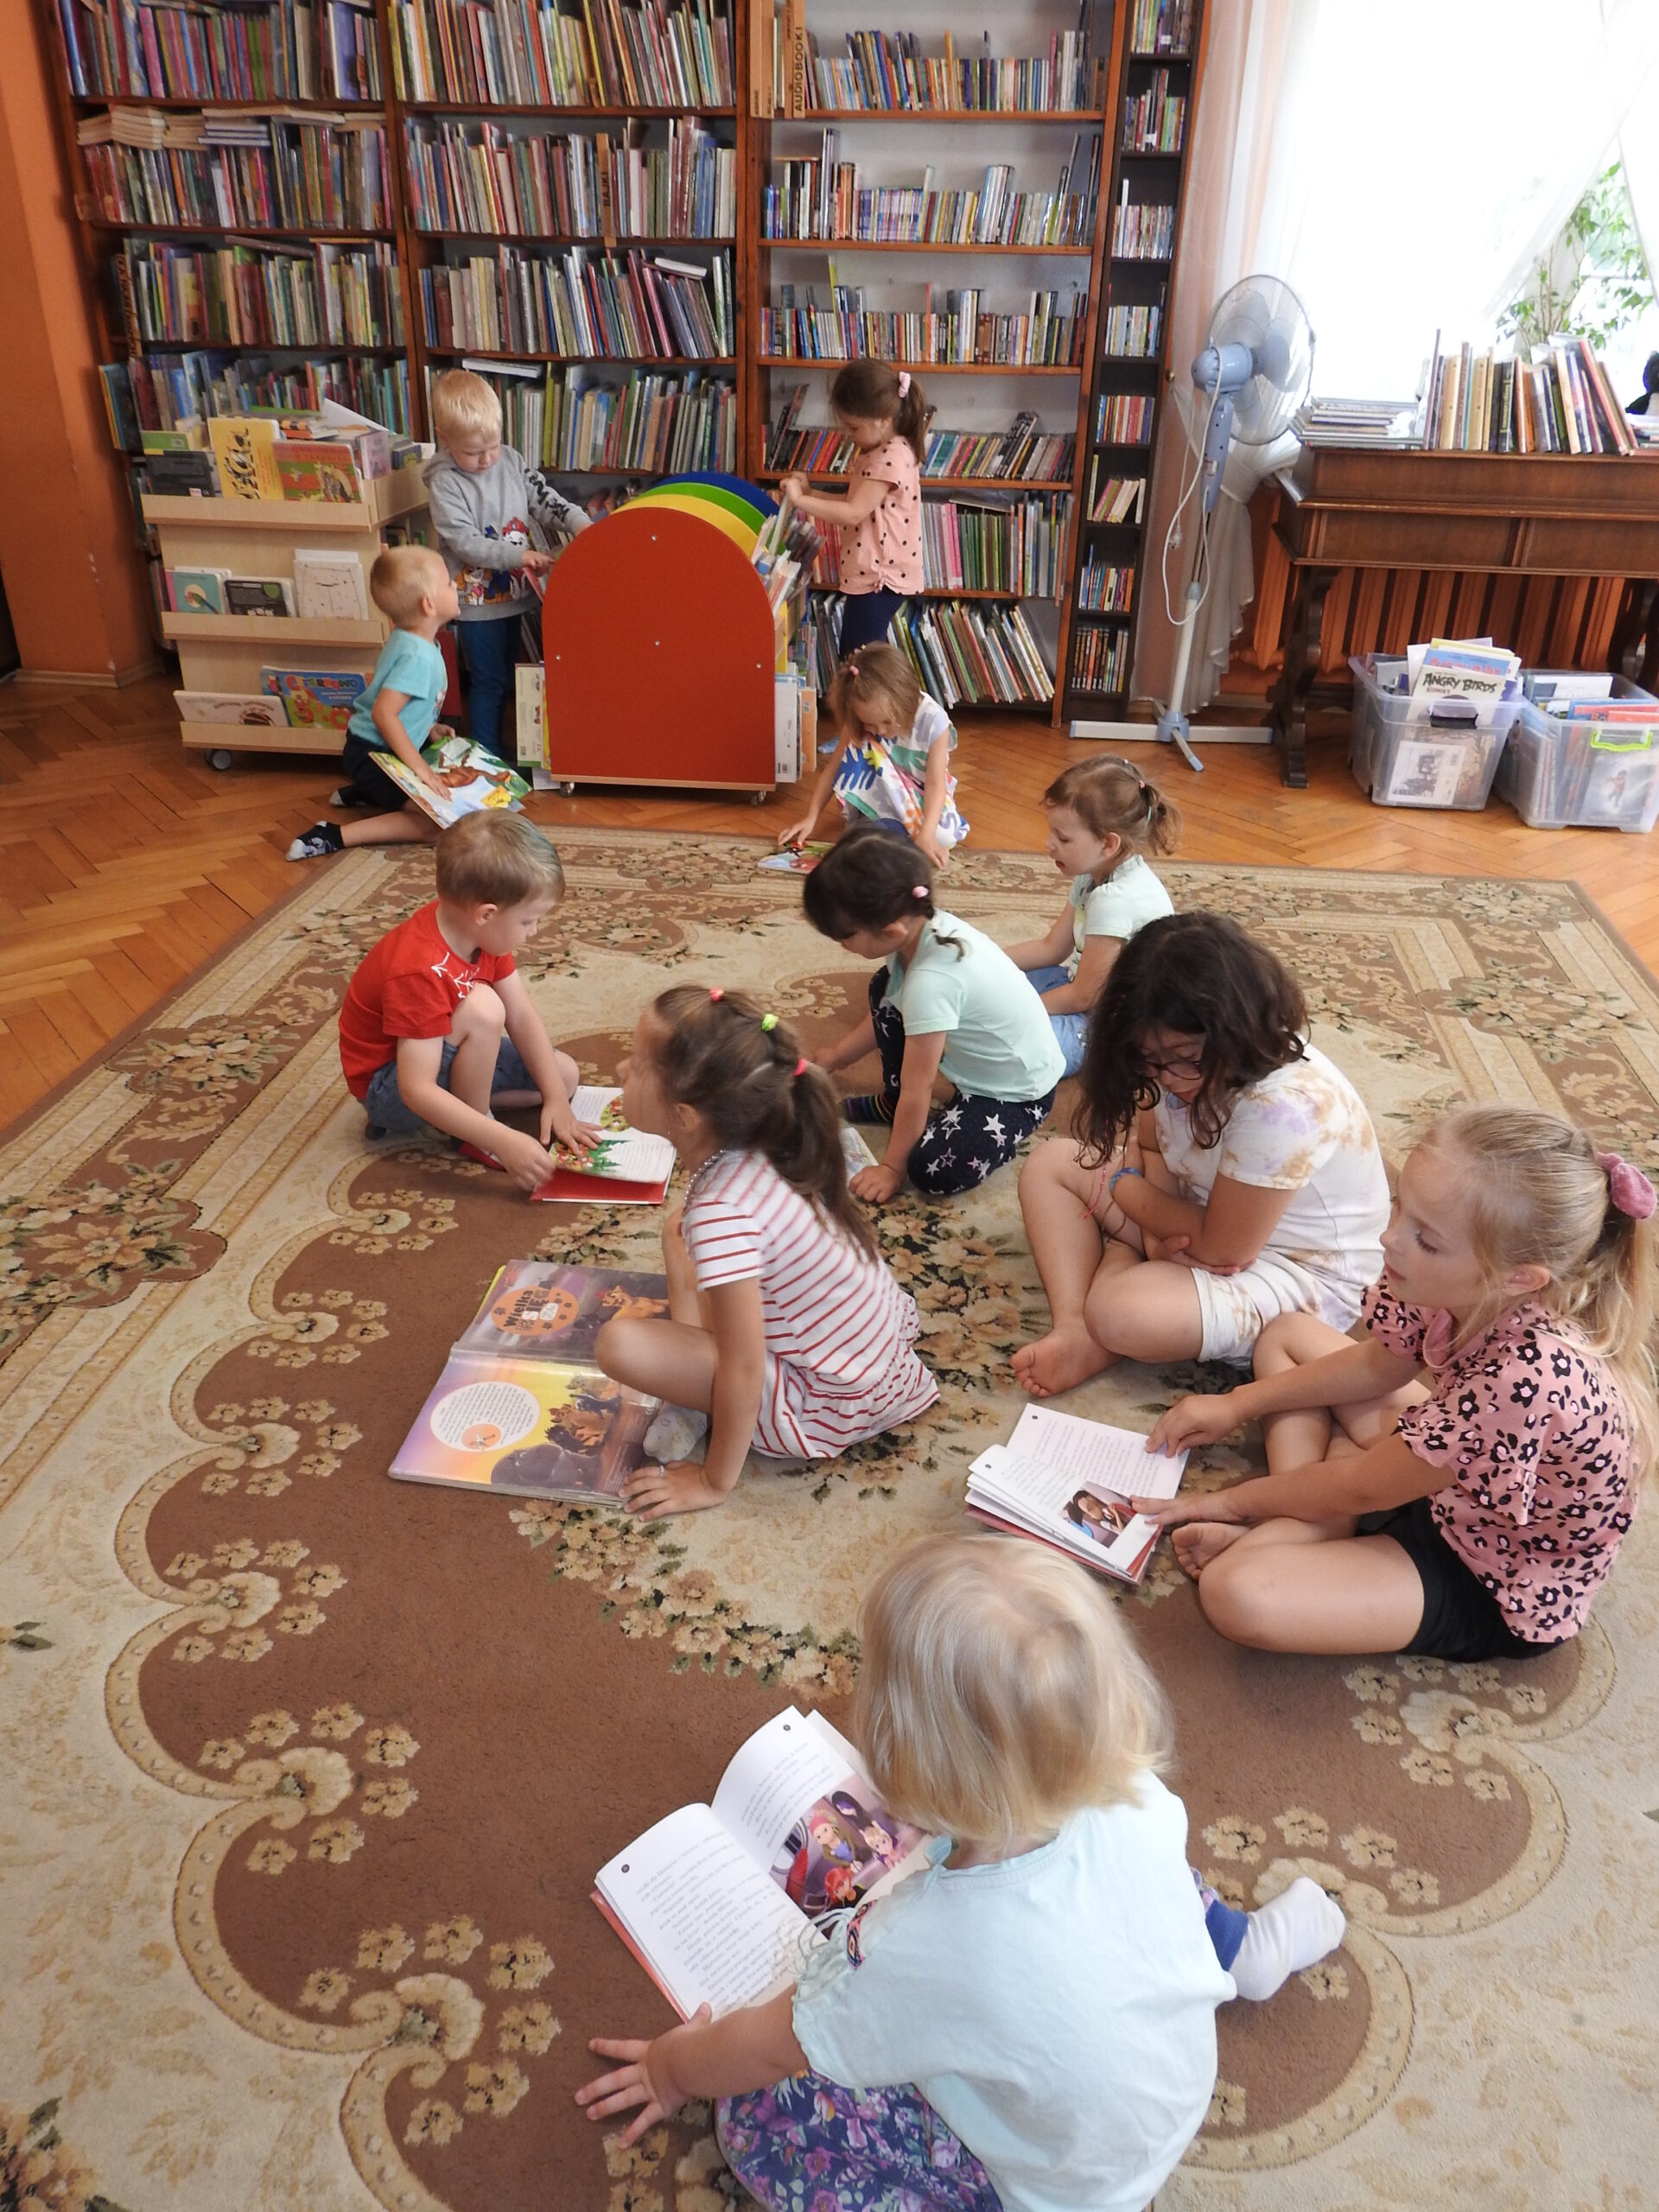 Grupa dzieci siedzi na dywanie. Przed nimi znajdują się otwarte książki. Troje dzieci ogląda książki na małym regale na kółkach. W tle tradycyjne regały z książkami.